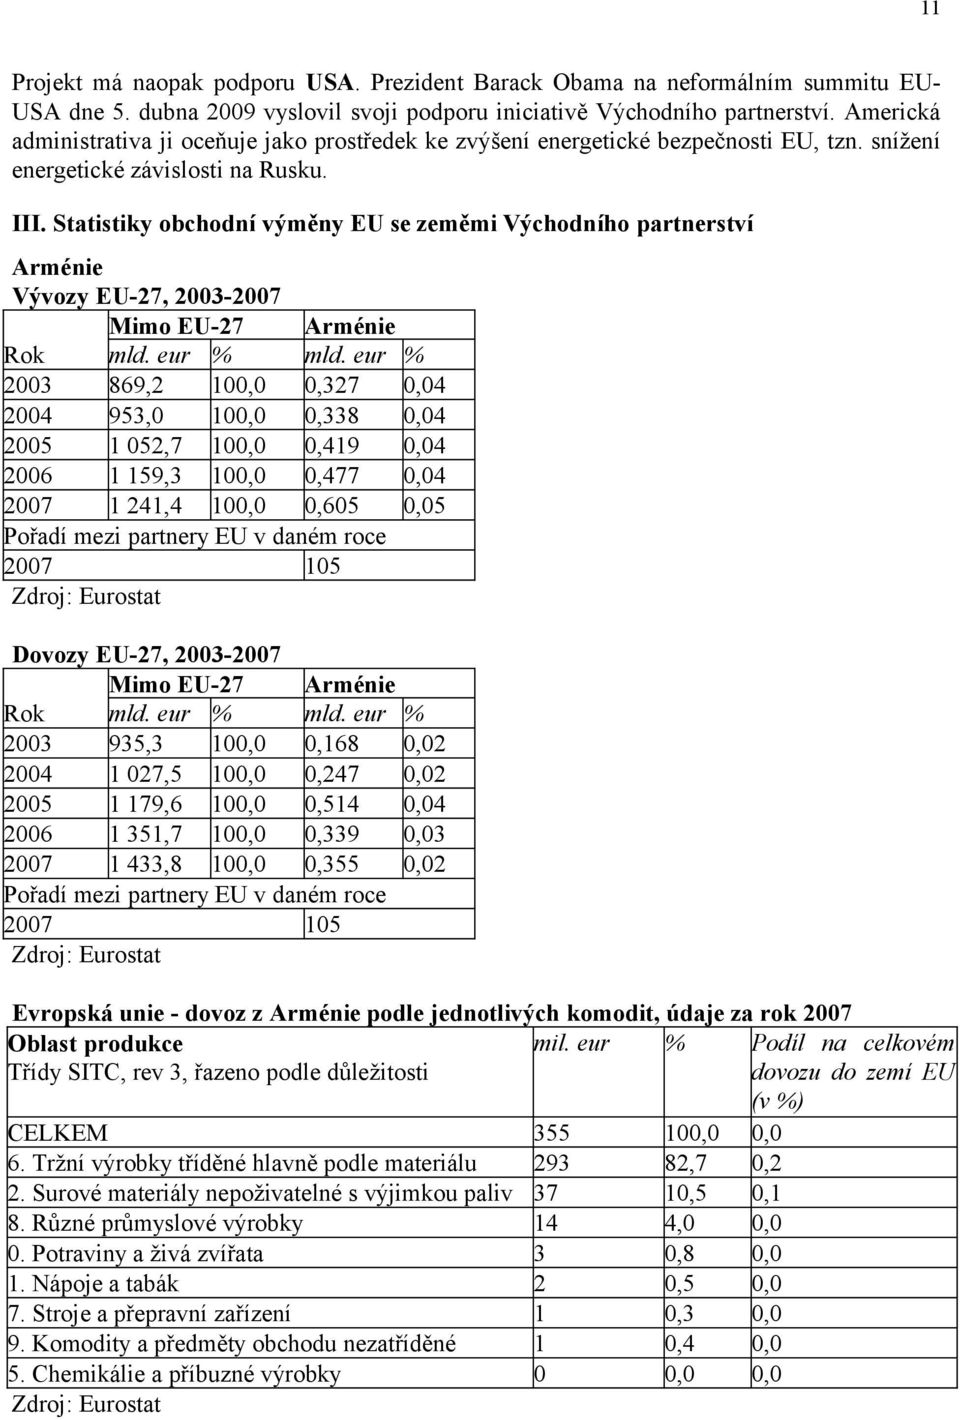 Statistiky obchodní výměny EU se zeměmi Východního partnerství Arménie Vývozy EU-27, 2003-2007 Mimo EU-27 Arménie 2003 869,2 100,0 0,327 0,04 2004 953,0 100,0 0,338 0,04 2005 1 052,7 100,0 0,419 0,04